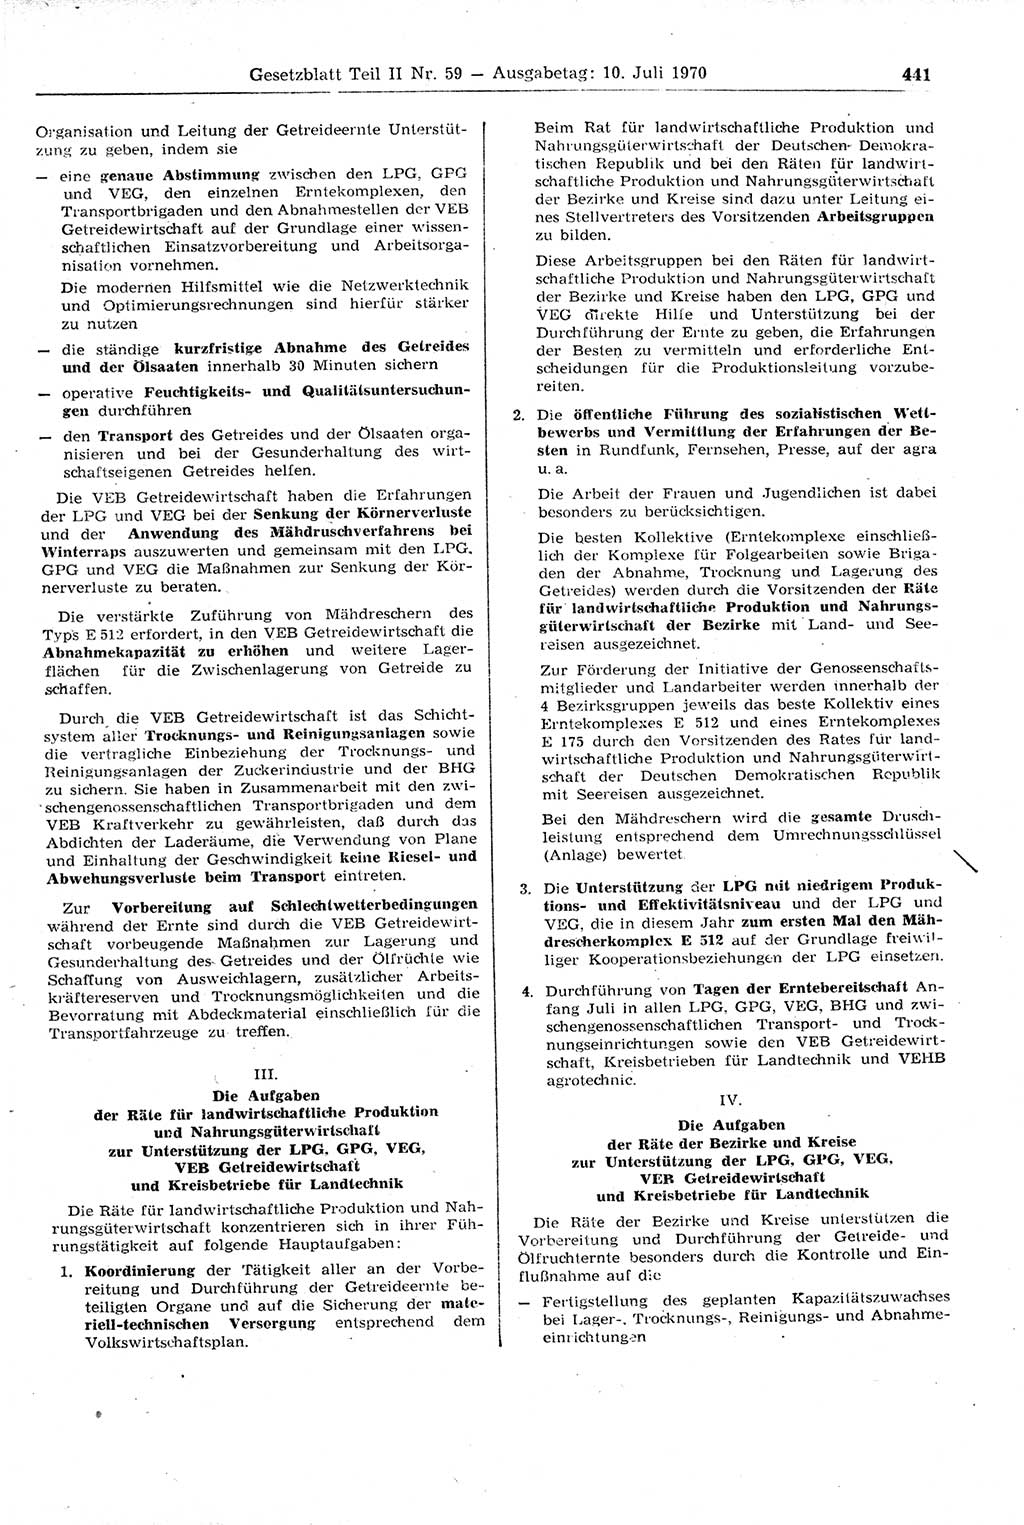 Gesetzblatt (GBl.) der Deutschen Demokratischen Republik (DDR) Teil ⅠⅠ 1970, Seite 441 (GBl. DDR ⅠⅠ 1970, S. 441)